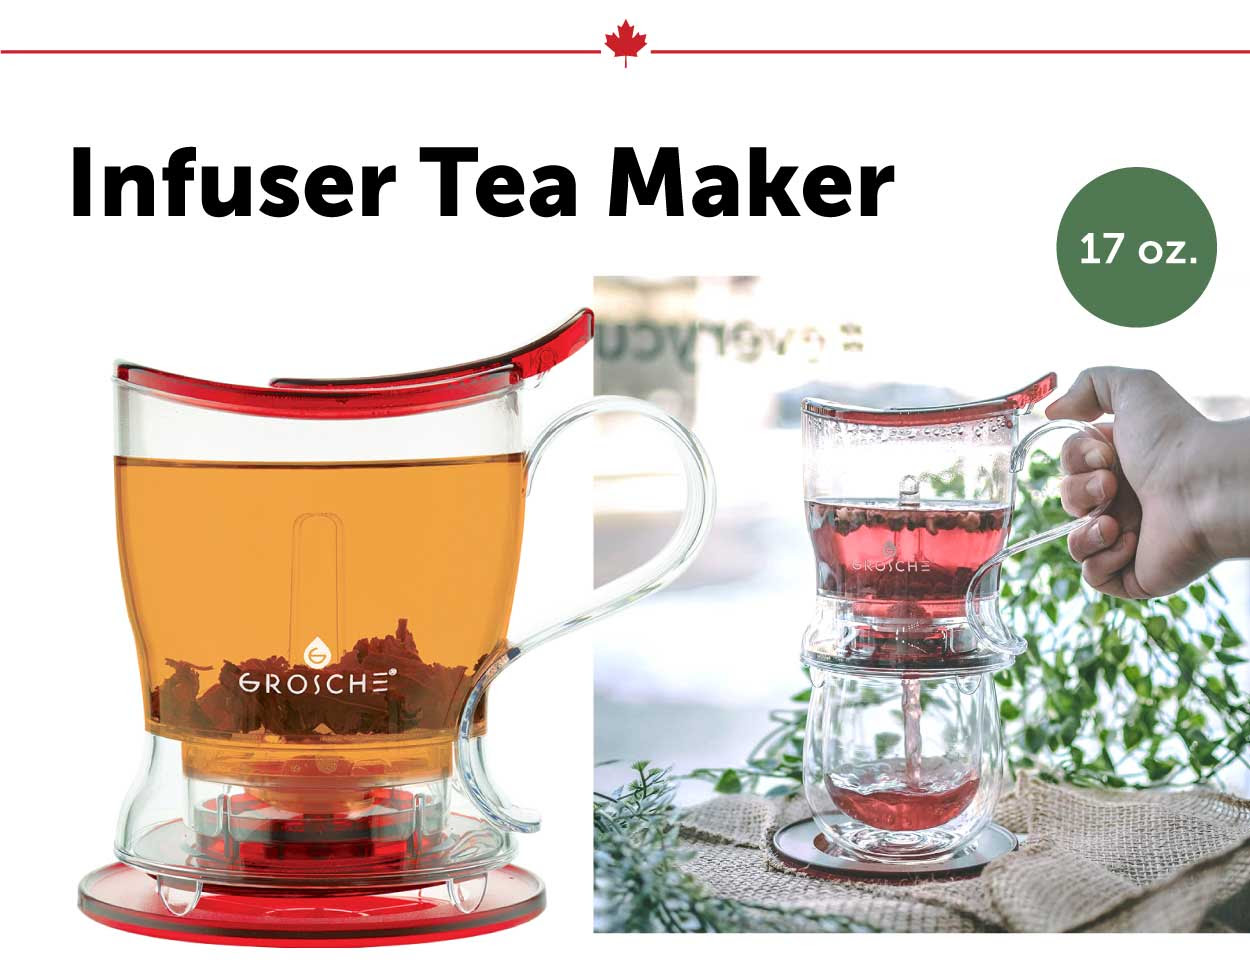 Infuser Tea Maker